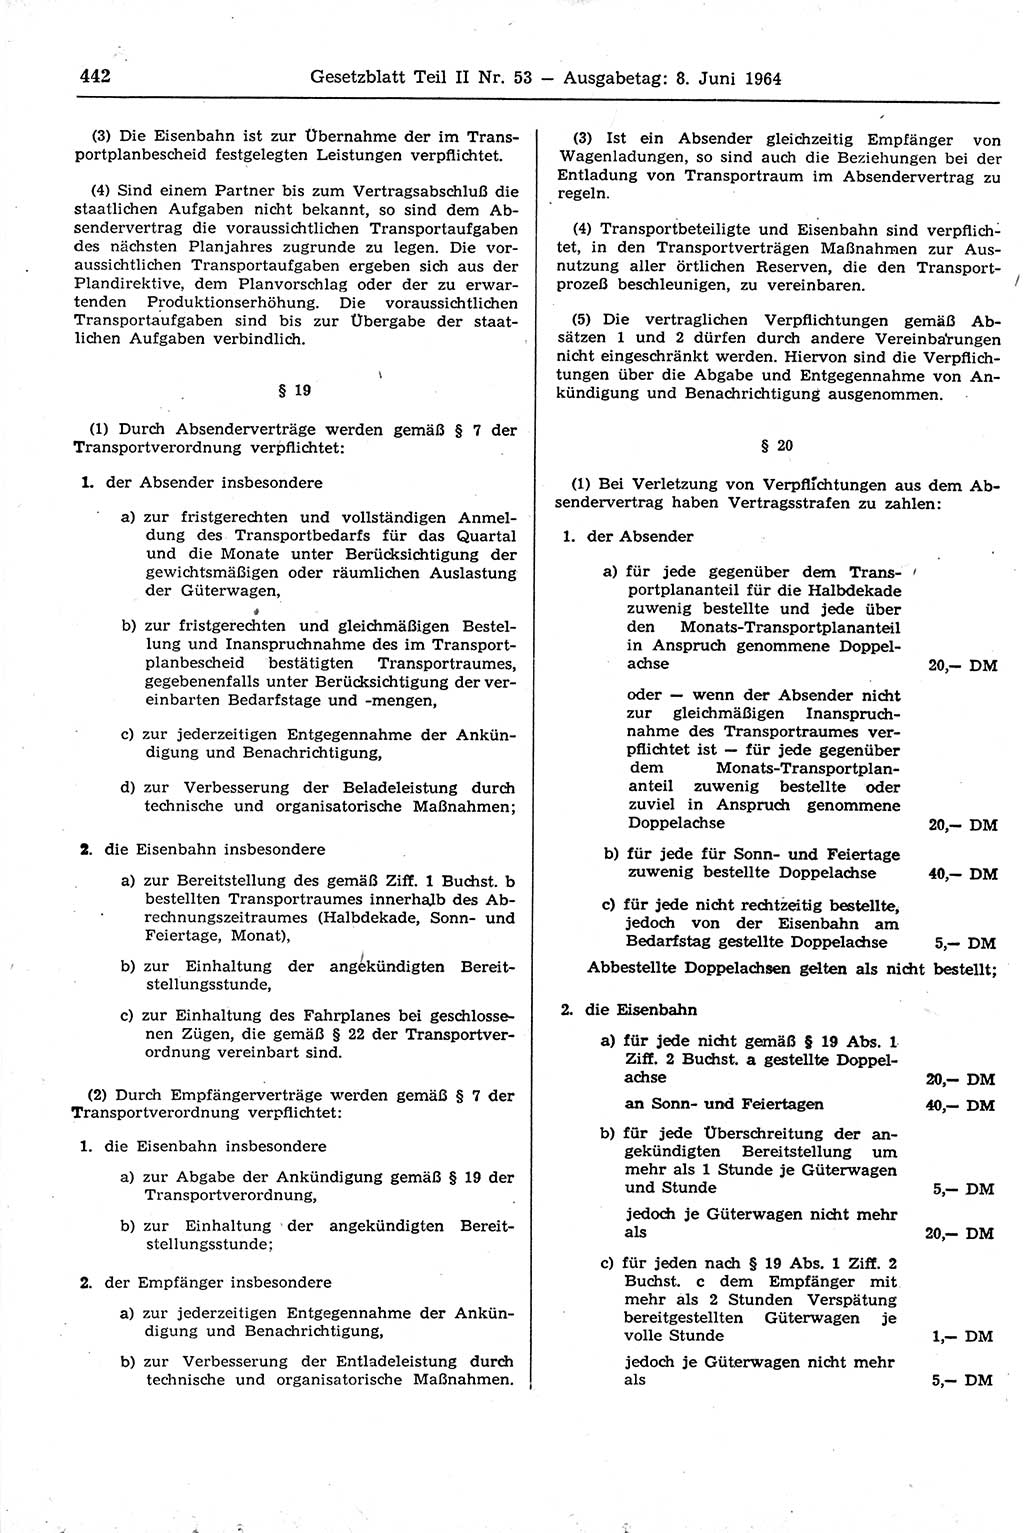 Gesetzblatt (GBl.) der Deutschen Demokratischen Republik (DDR) Teil ⅠⅠ 1964, Seite 442 (GBl. DDR ⅠⅠ 1964, S. 442)